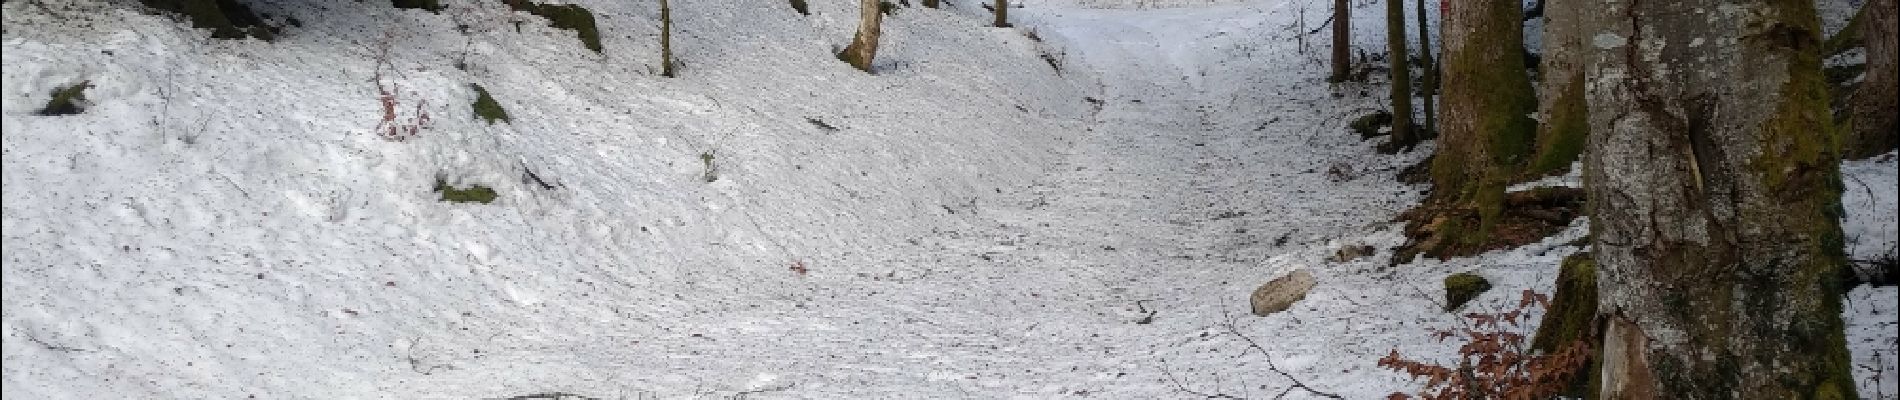 Randonnée Raquettes à neige La Chaux - Cret Moniot 19 fév 2019 CAF - Photo